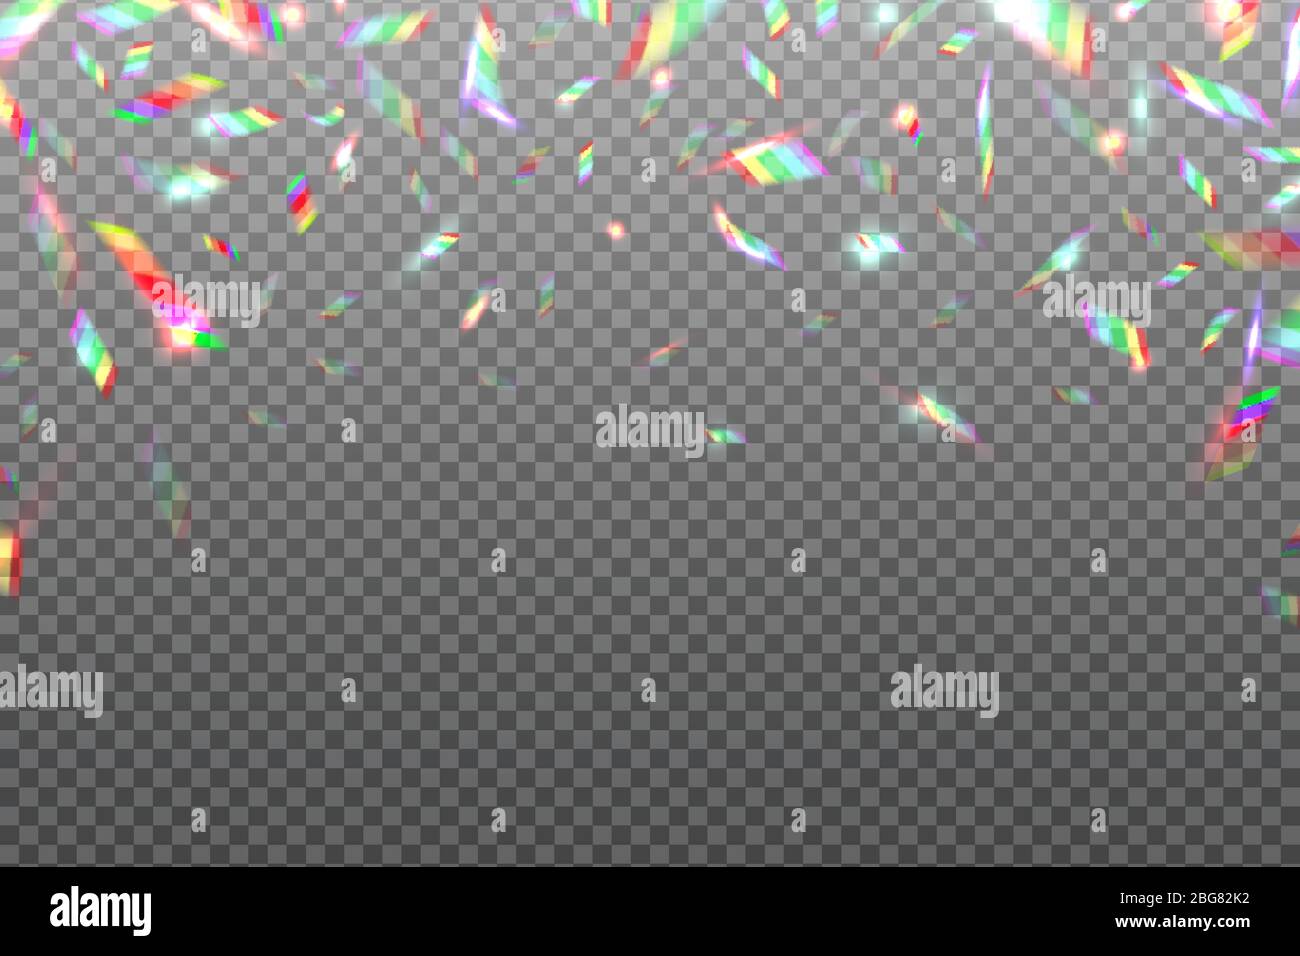 Hologramm Glitch Regenbogen Hintergrund. Kristall glänzende metallische schillernde Folie isoliert. Hologramm Effekt Vektor Illustration. Hologramm lebendiger Effekt, Verlauf hell irisierend Stock Vektor